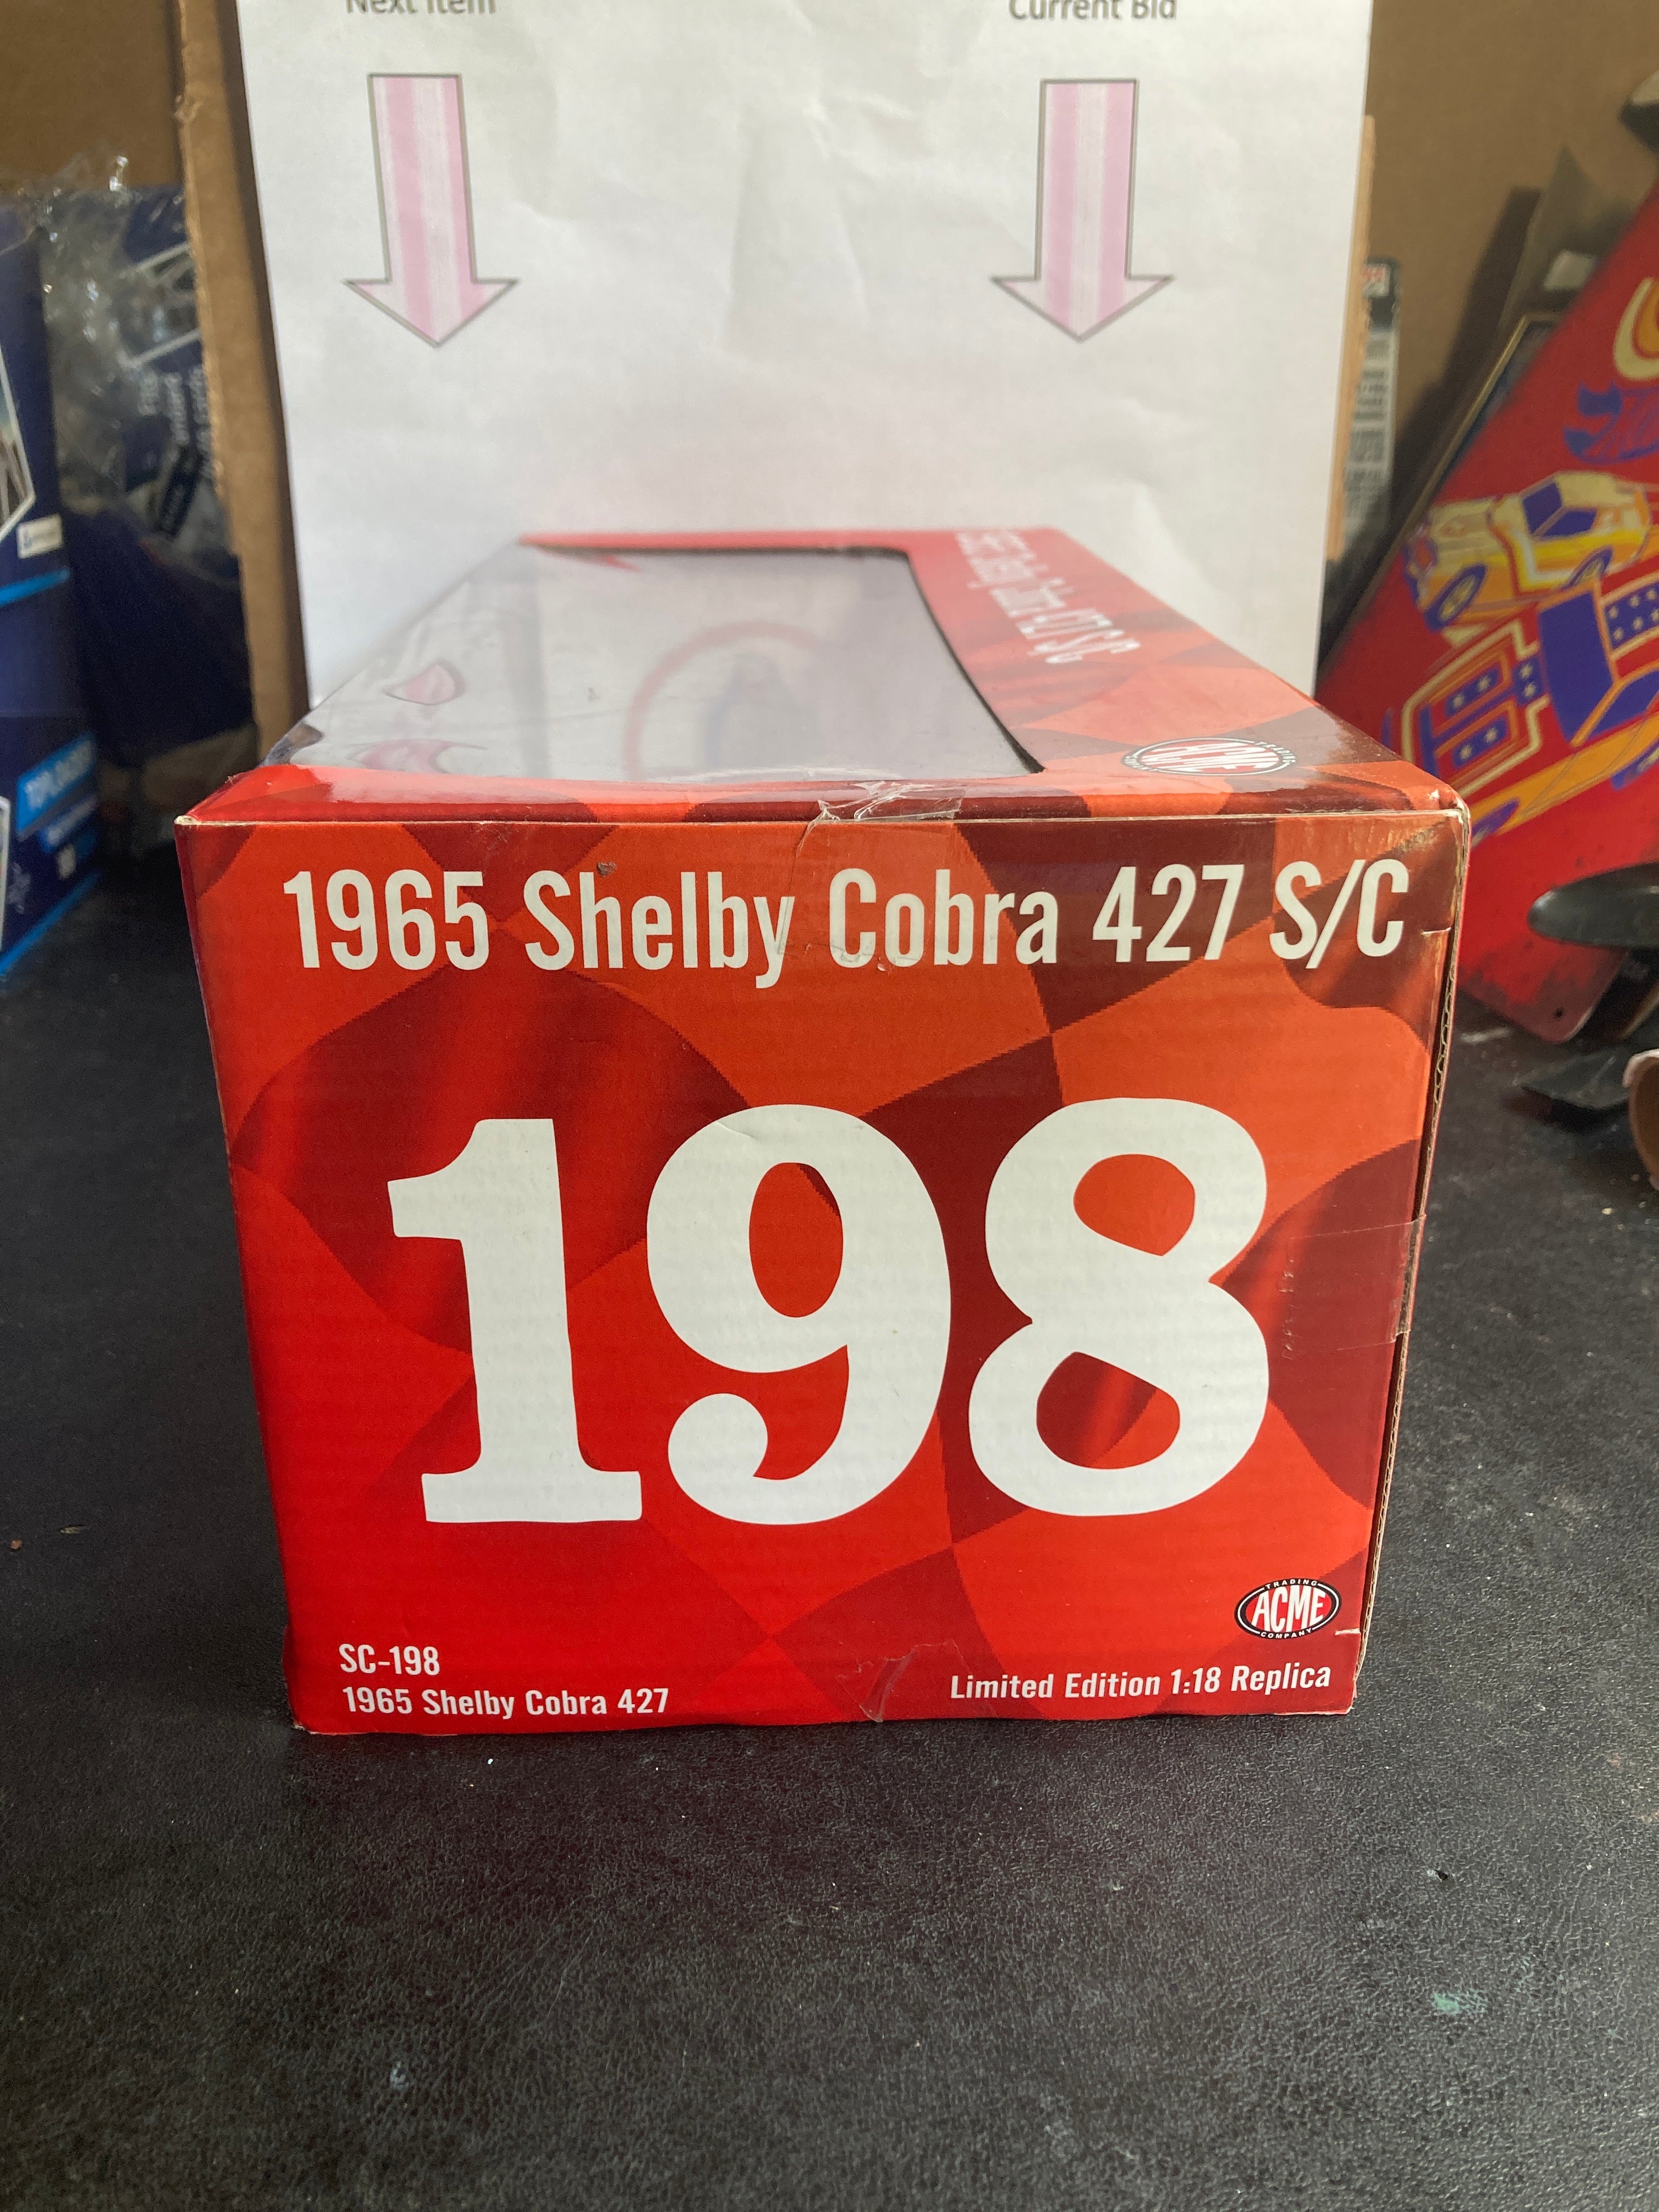 Acme Trading Company Shelby Cobra 427 S/C Diecast